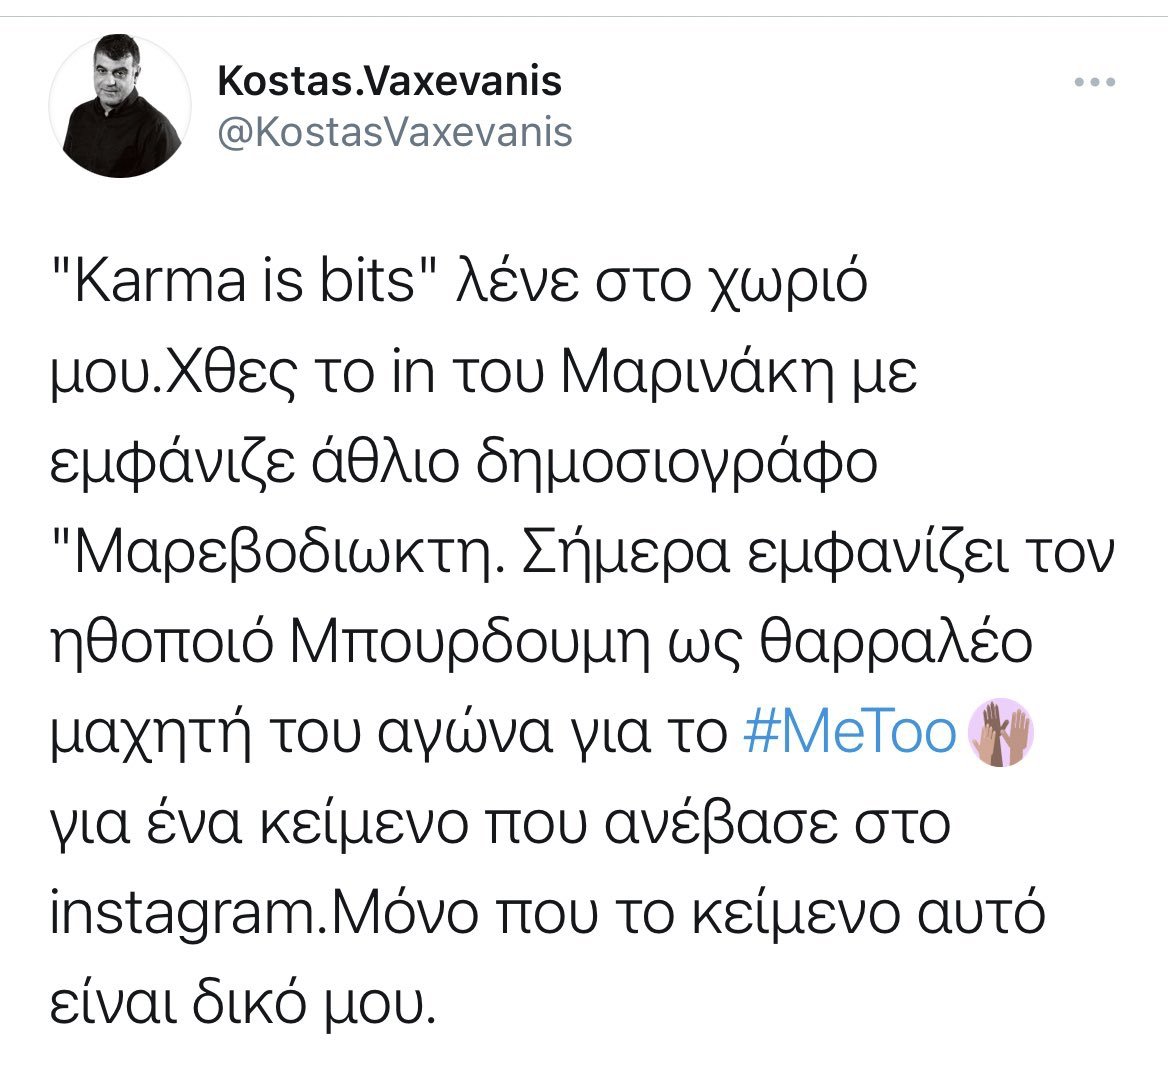 'ΚωλοΔεξιοί' bits τον κάνατε τον ΣΥΡΙΖΑ πς.
Karma is 3%.

Πώς να μην έχουν τόσα νεύρα;🤷‍♀️ 😂